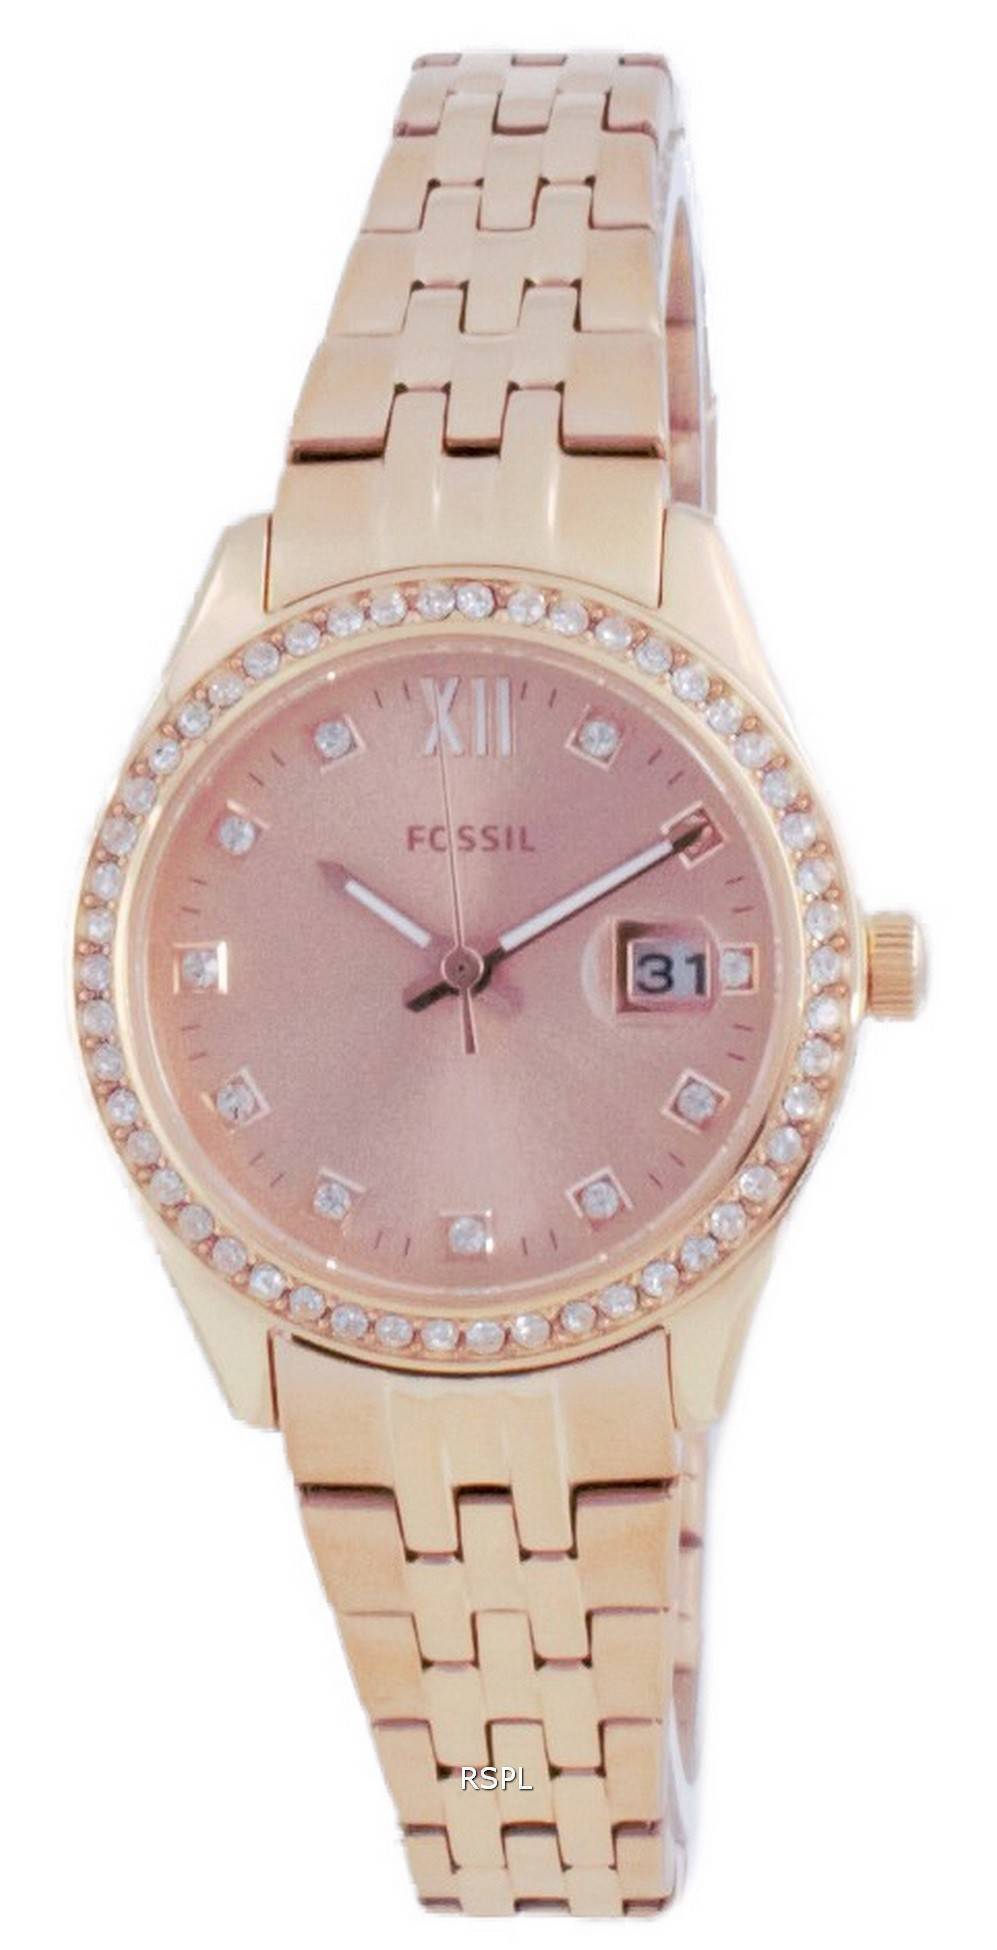 화석 스칼렛 마이크로 다이아몬드 악센트 로즈 골드 쿼츠 ES5038 여성용 시계